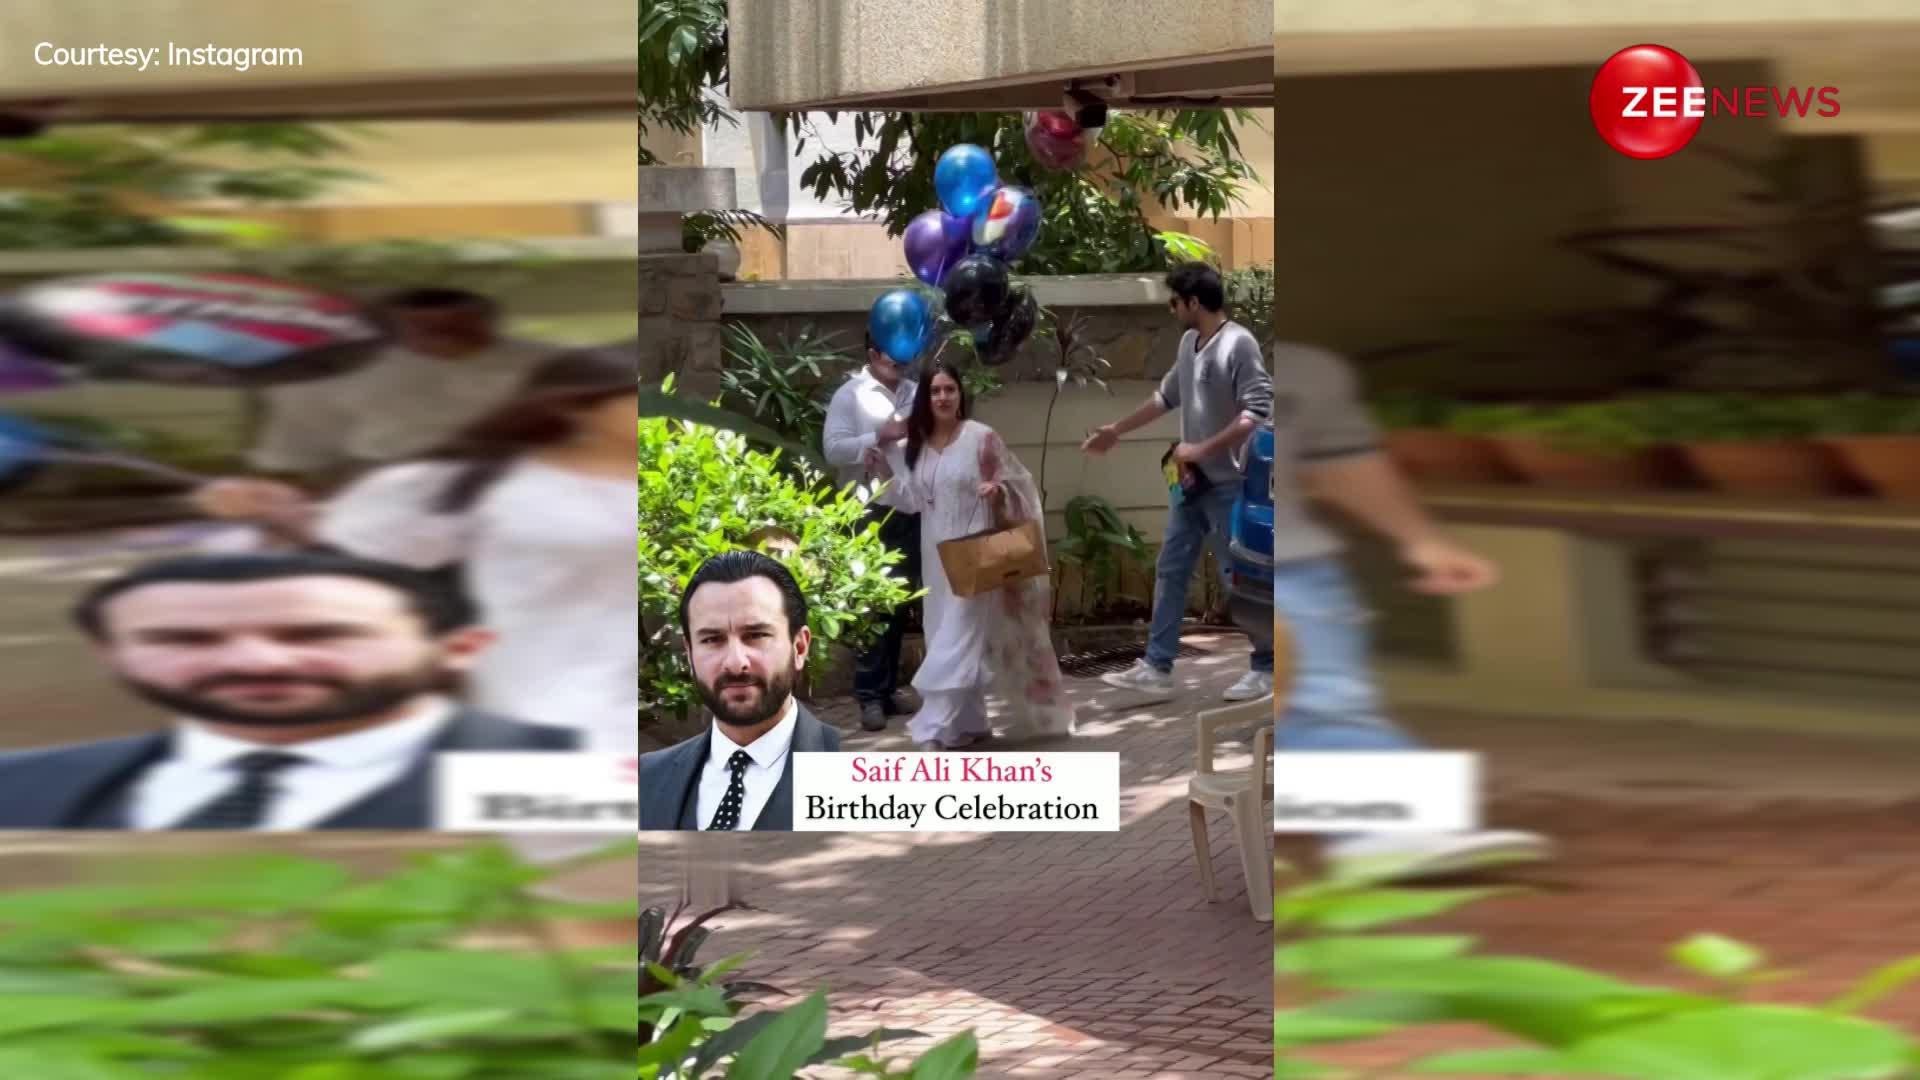 Saif Ali Khan का बर्थडे सेलिब्रेट करने पहुंचीं बेटी सारा, केक और गुब्बारे लिए भाई इब्राहिम भी दिखे साथ